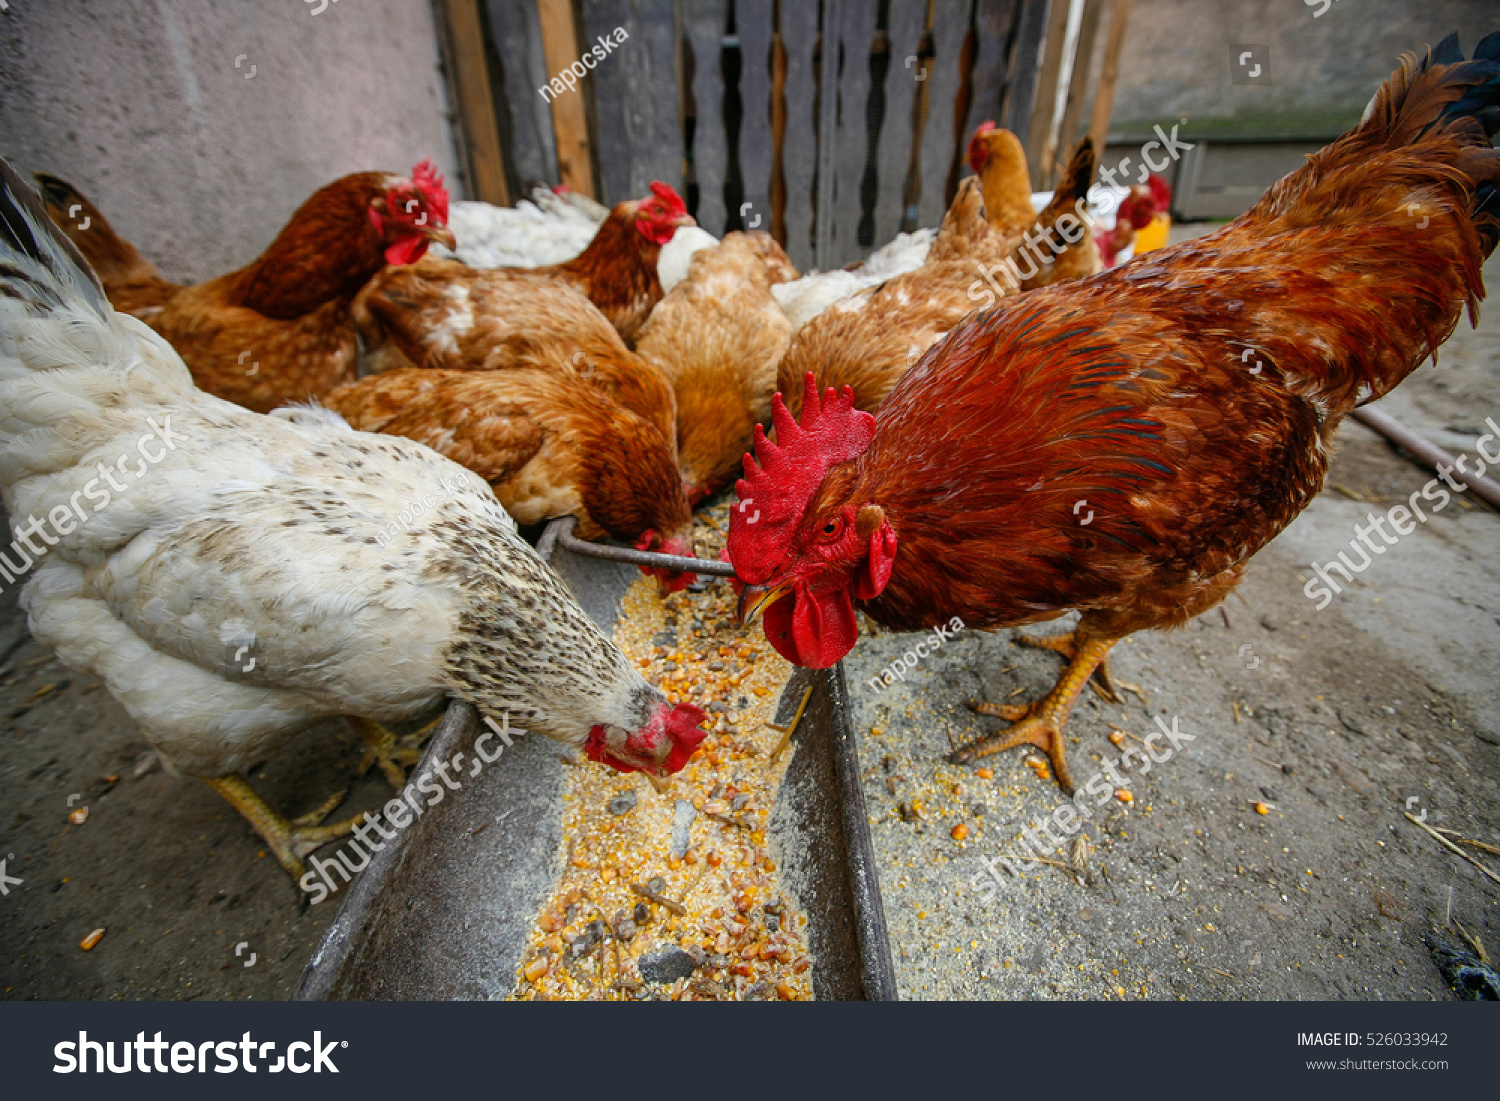 養鶏場でトウモロコシを食べる自由な鶏 の写真素材 今すぐ編集